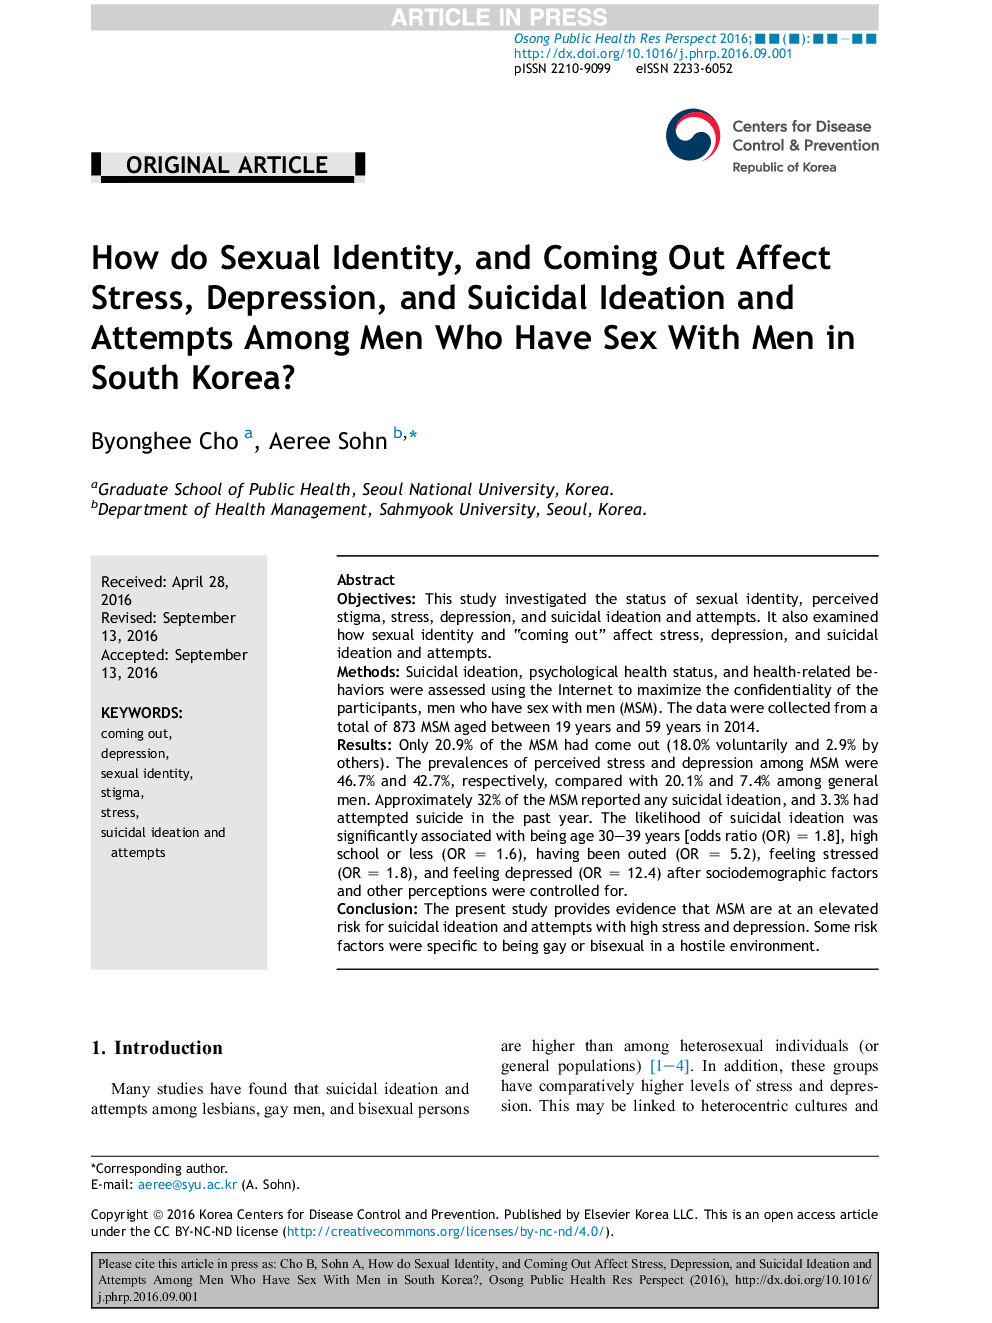 چگونه هویت جنسی، و بیرون آمدن از استرس، افسردگی، و افکار خودکشی و تلاش در میان مردان کت و شلوار با مردان در کره جنوبی چگونه؟ 